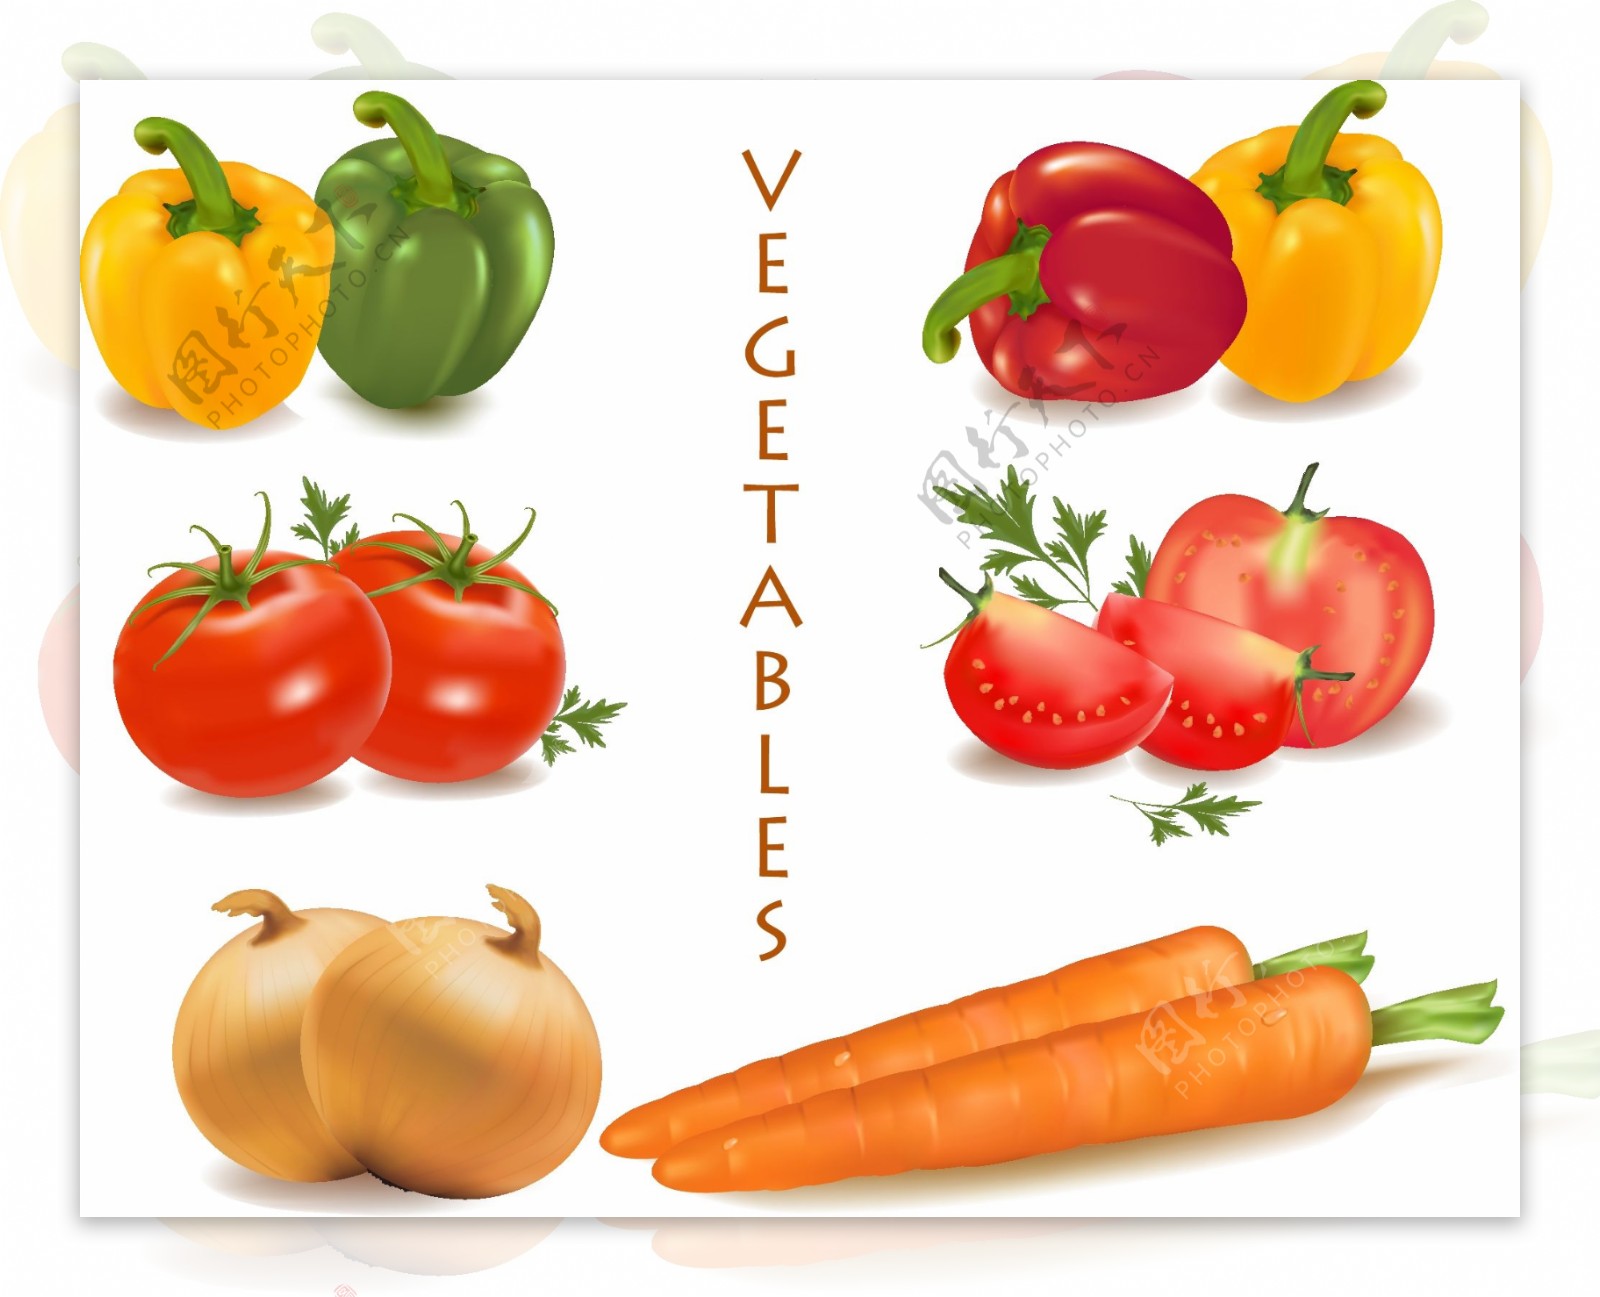 各种蔬菜的载体材料